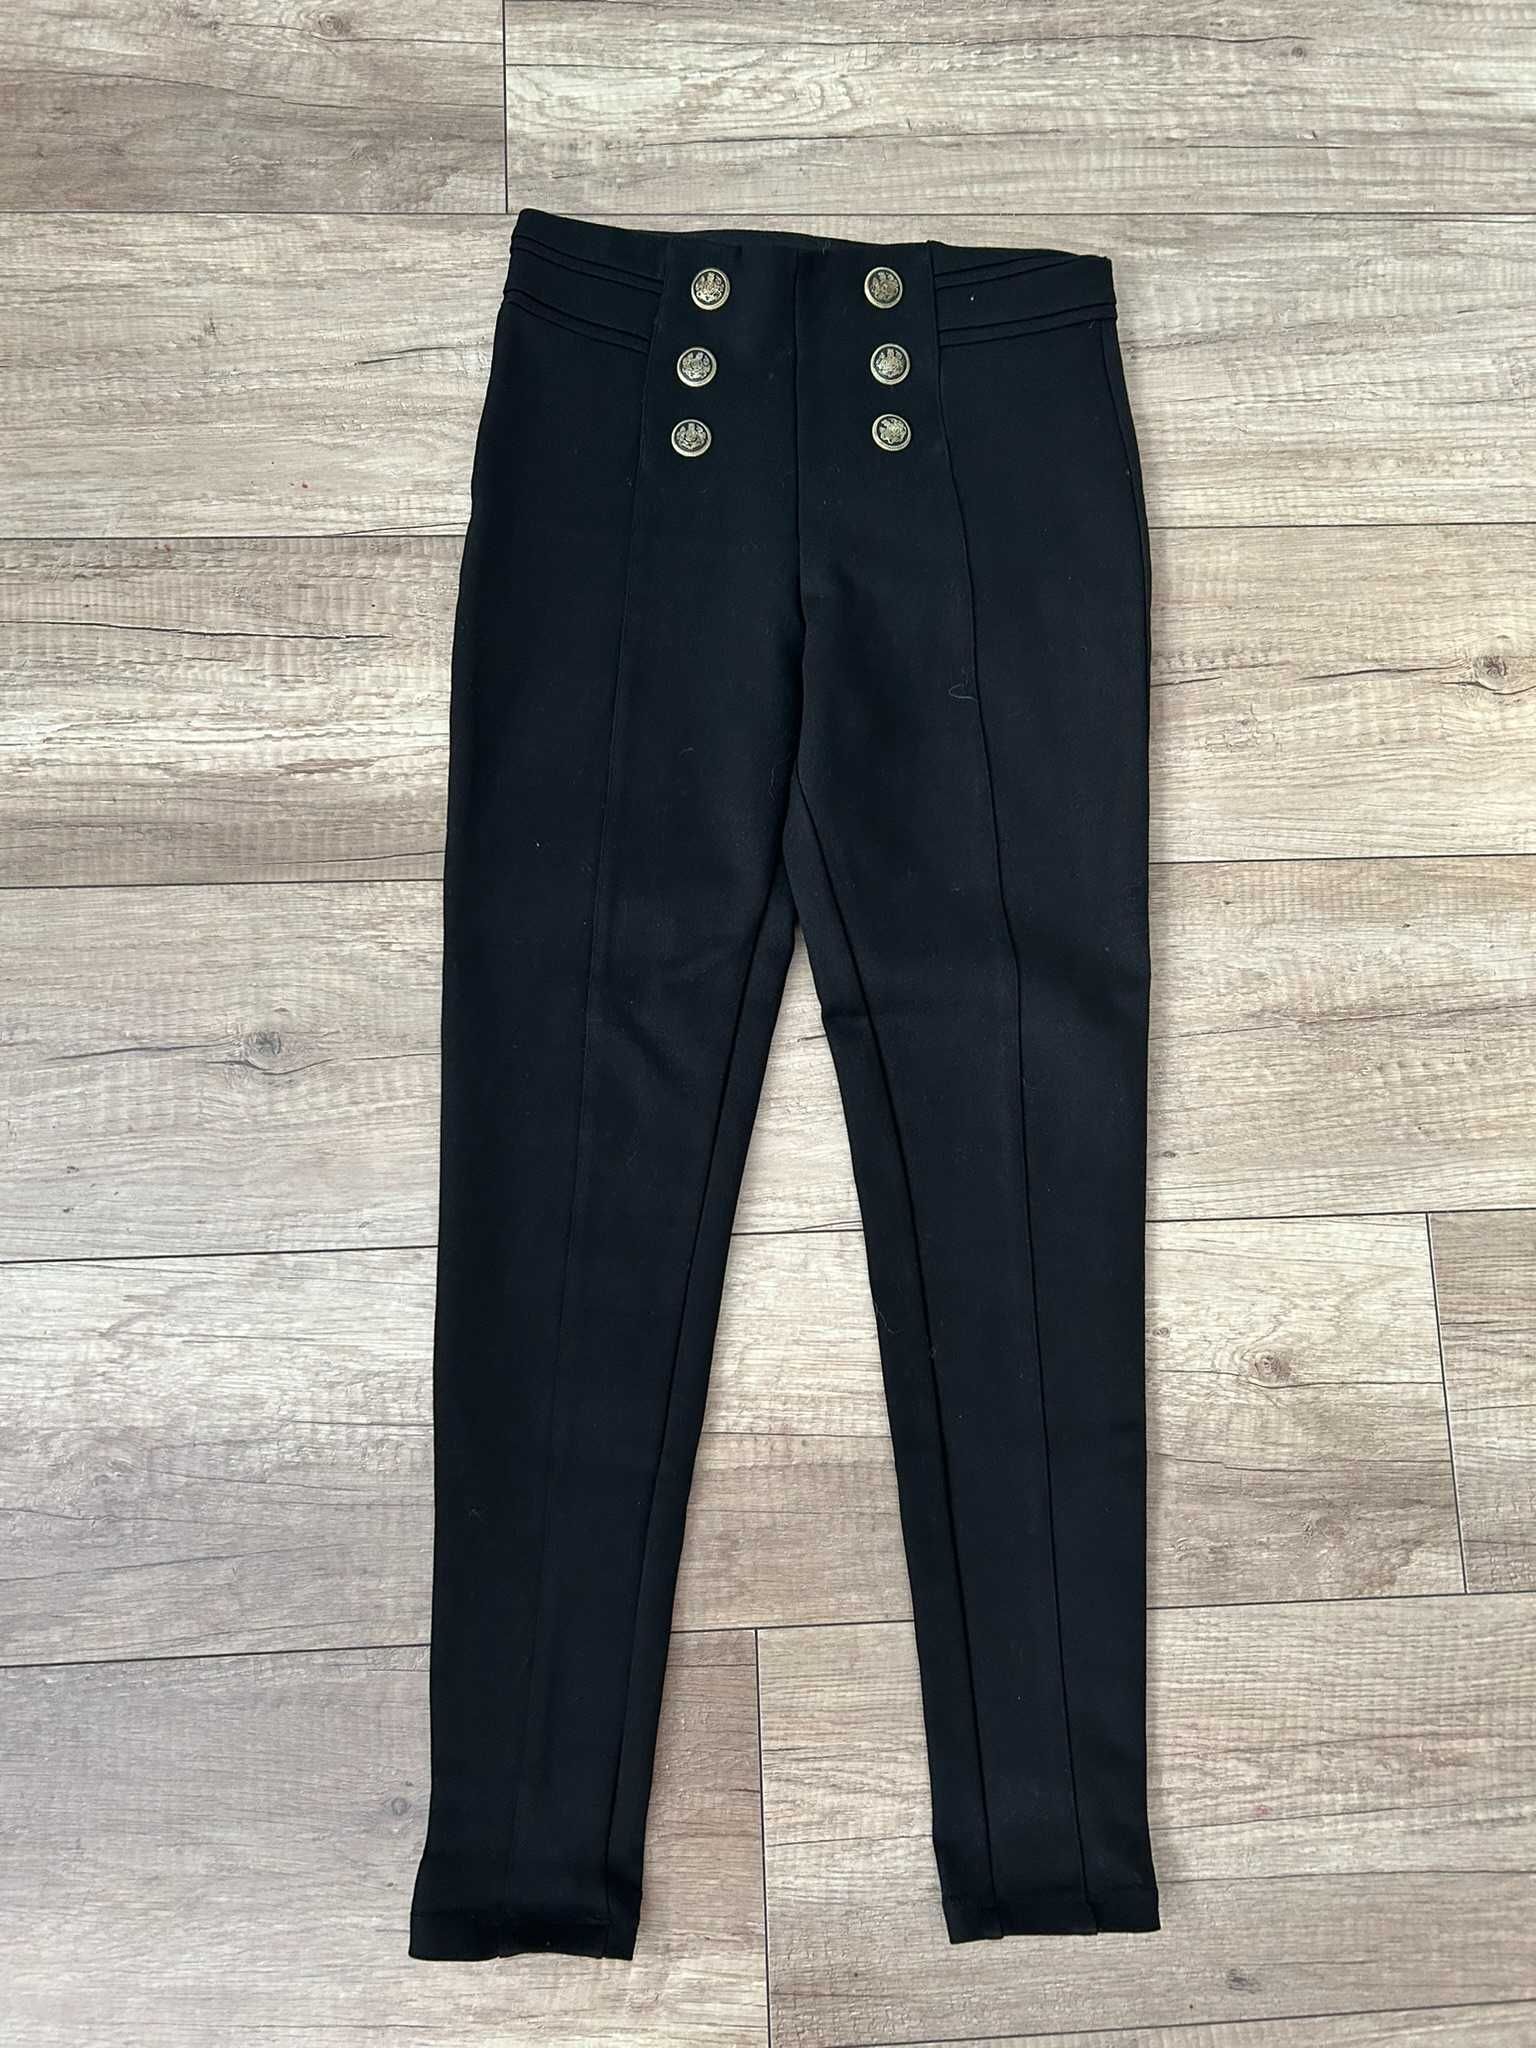 Spodnie, legginsy firmy Zara w rozmiarze S